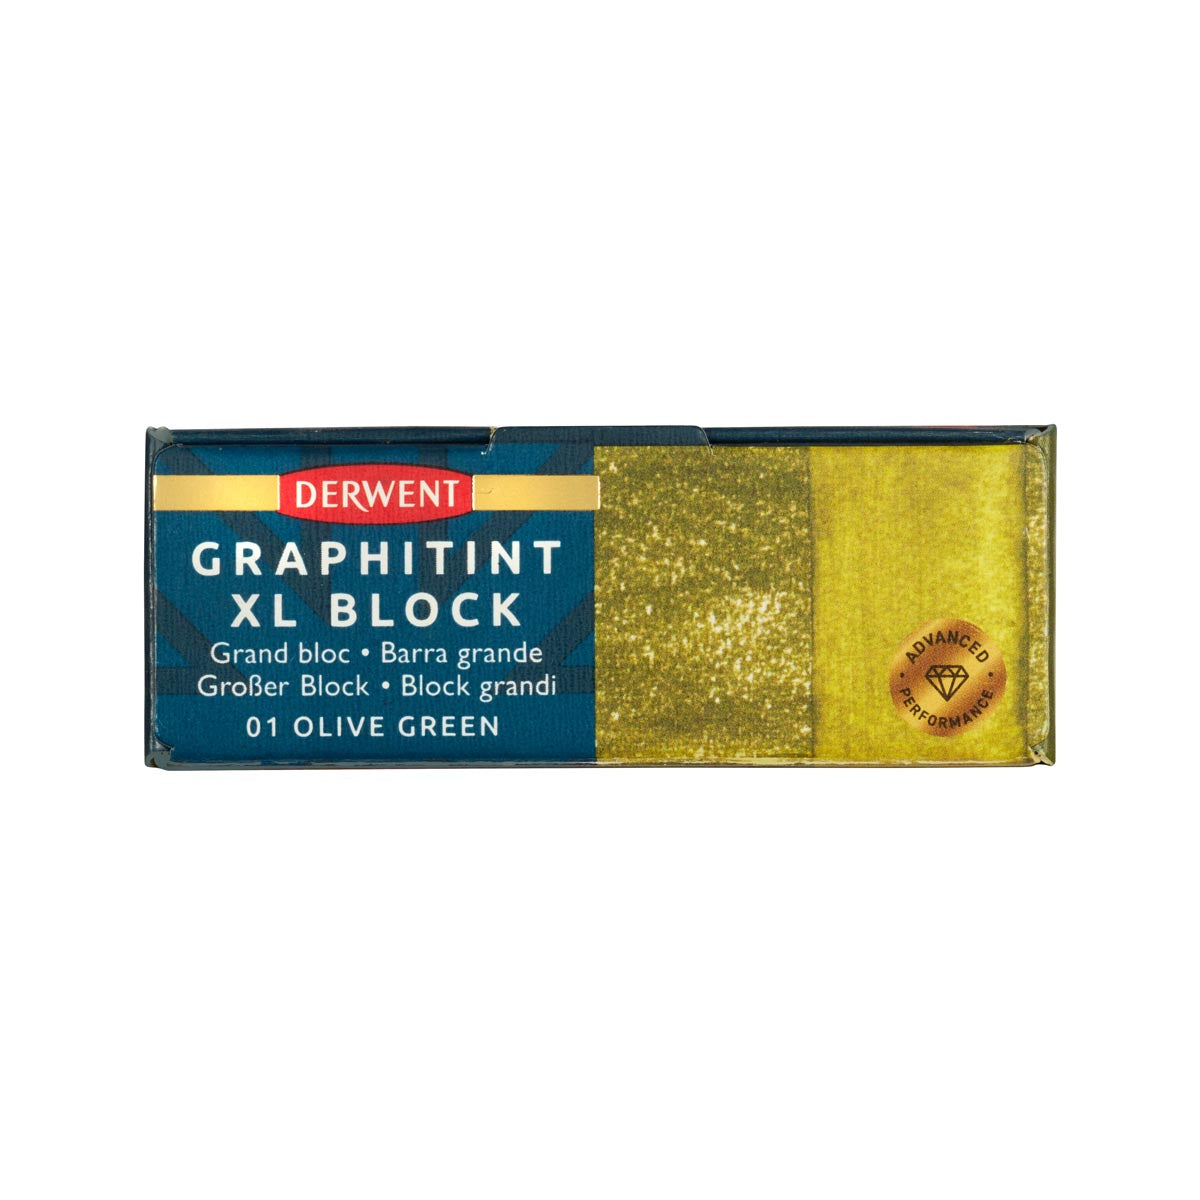 Derwent - Graphitint XL -Block - Olive Green